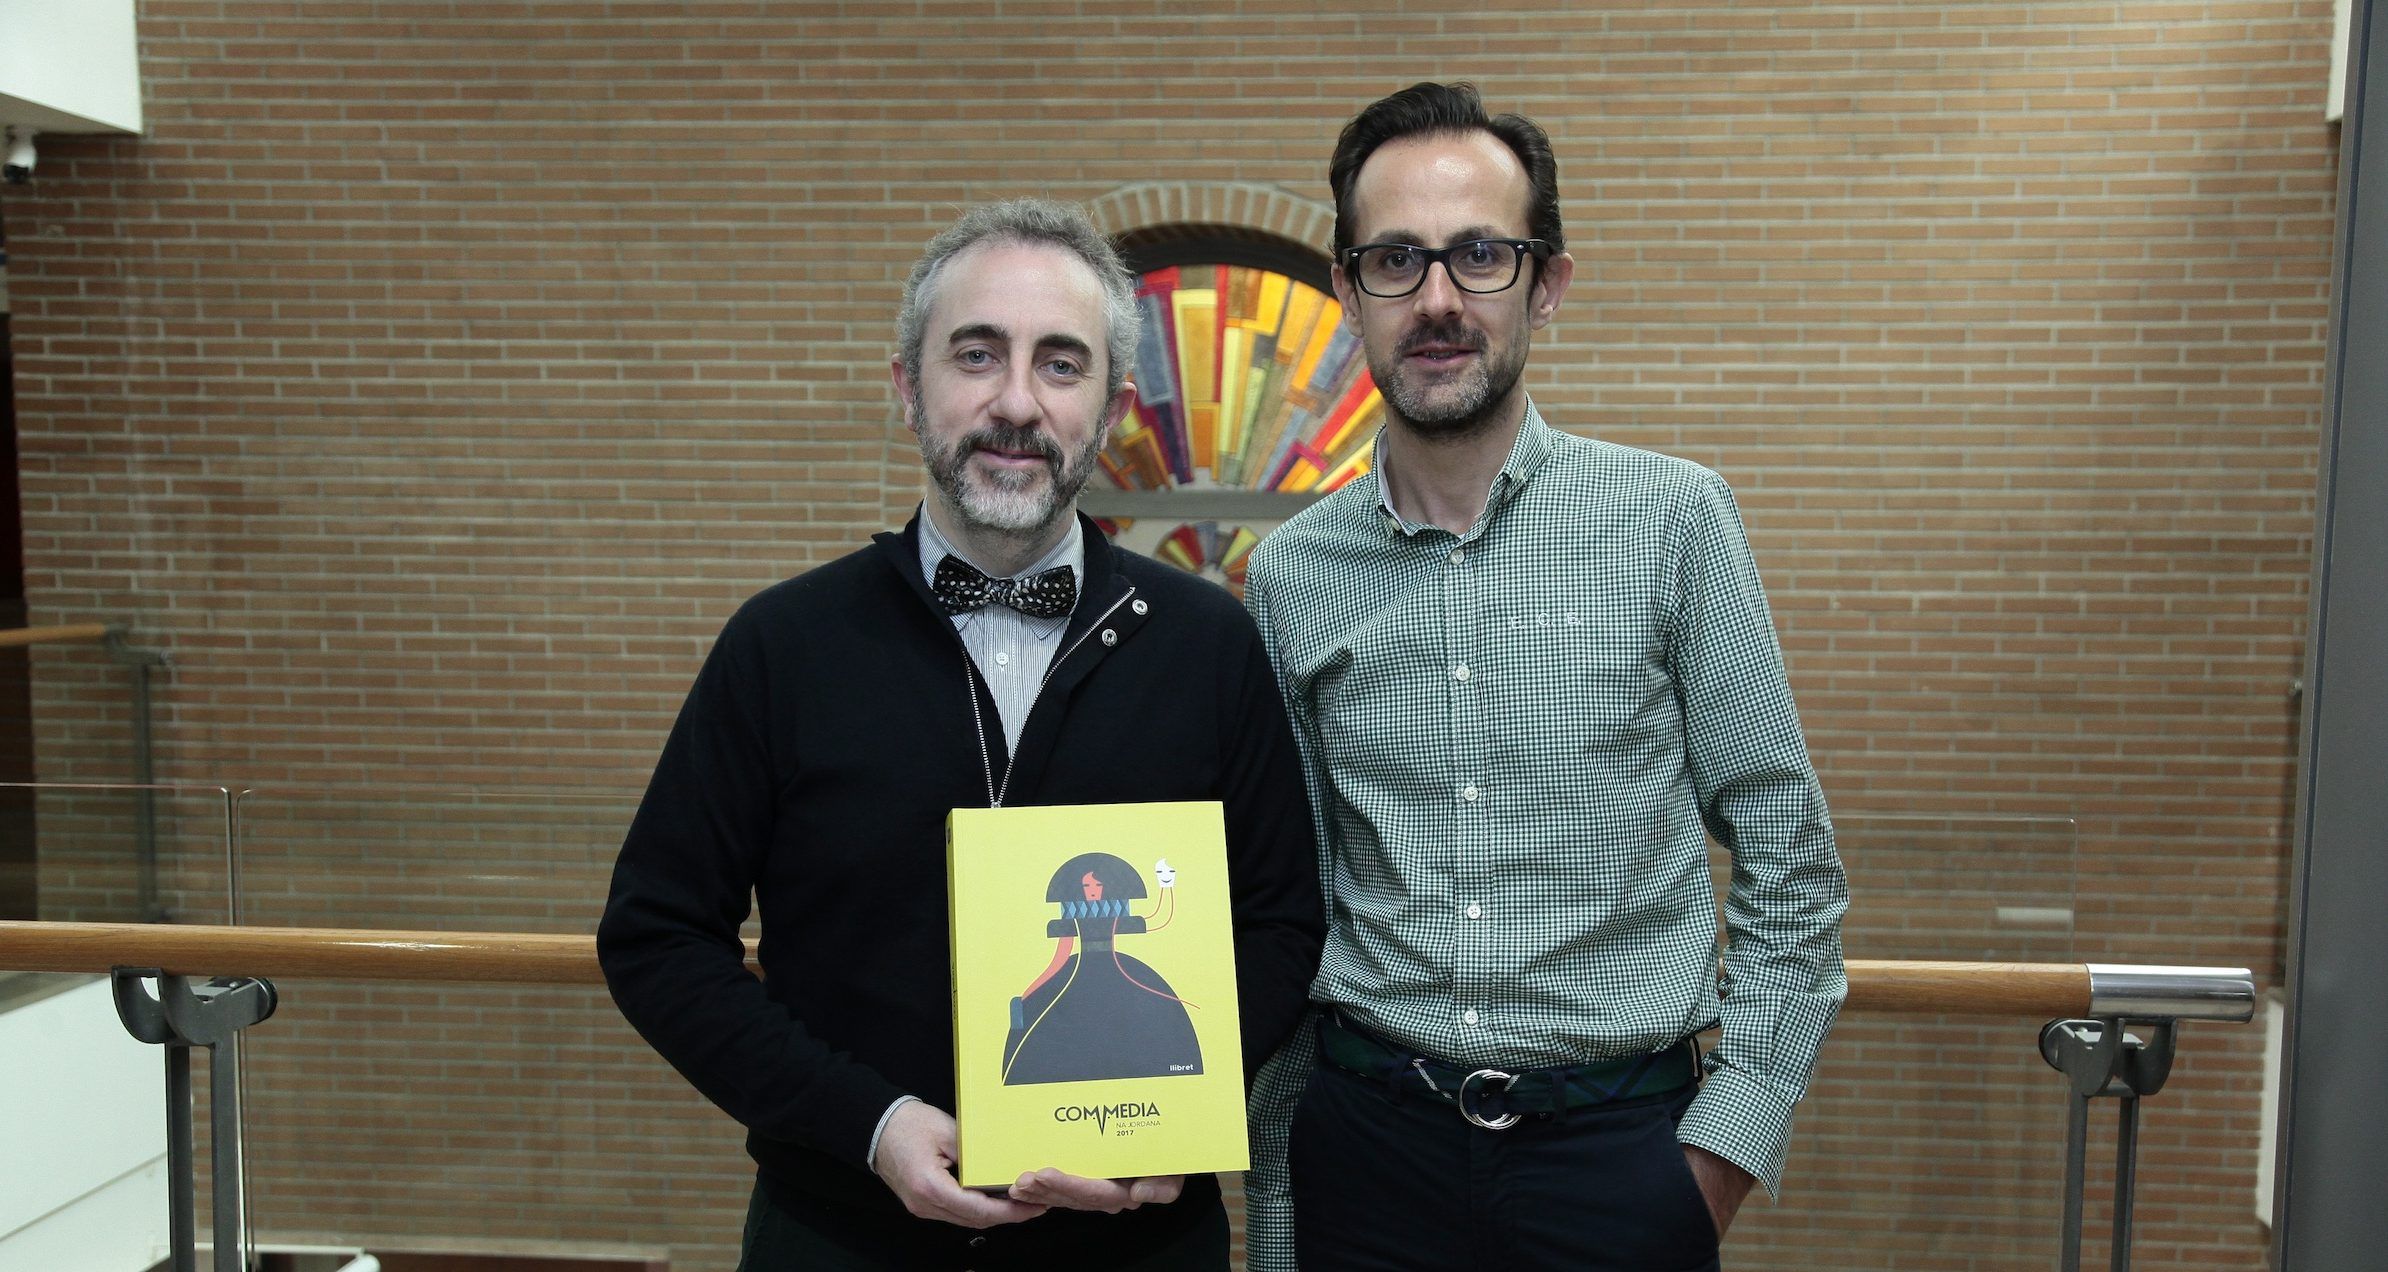 Jesús Catalá y Emilio Callado, profesores de la CEU-UCH, coautores de los estudios históricos publicados en el llibret de falla de Na Jornada, premiado por la Conselleria d'Educació.